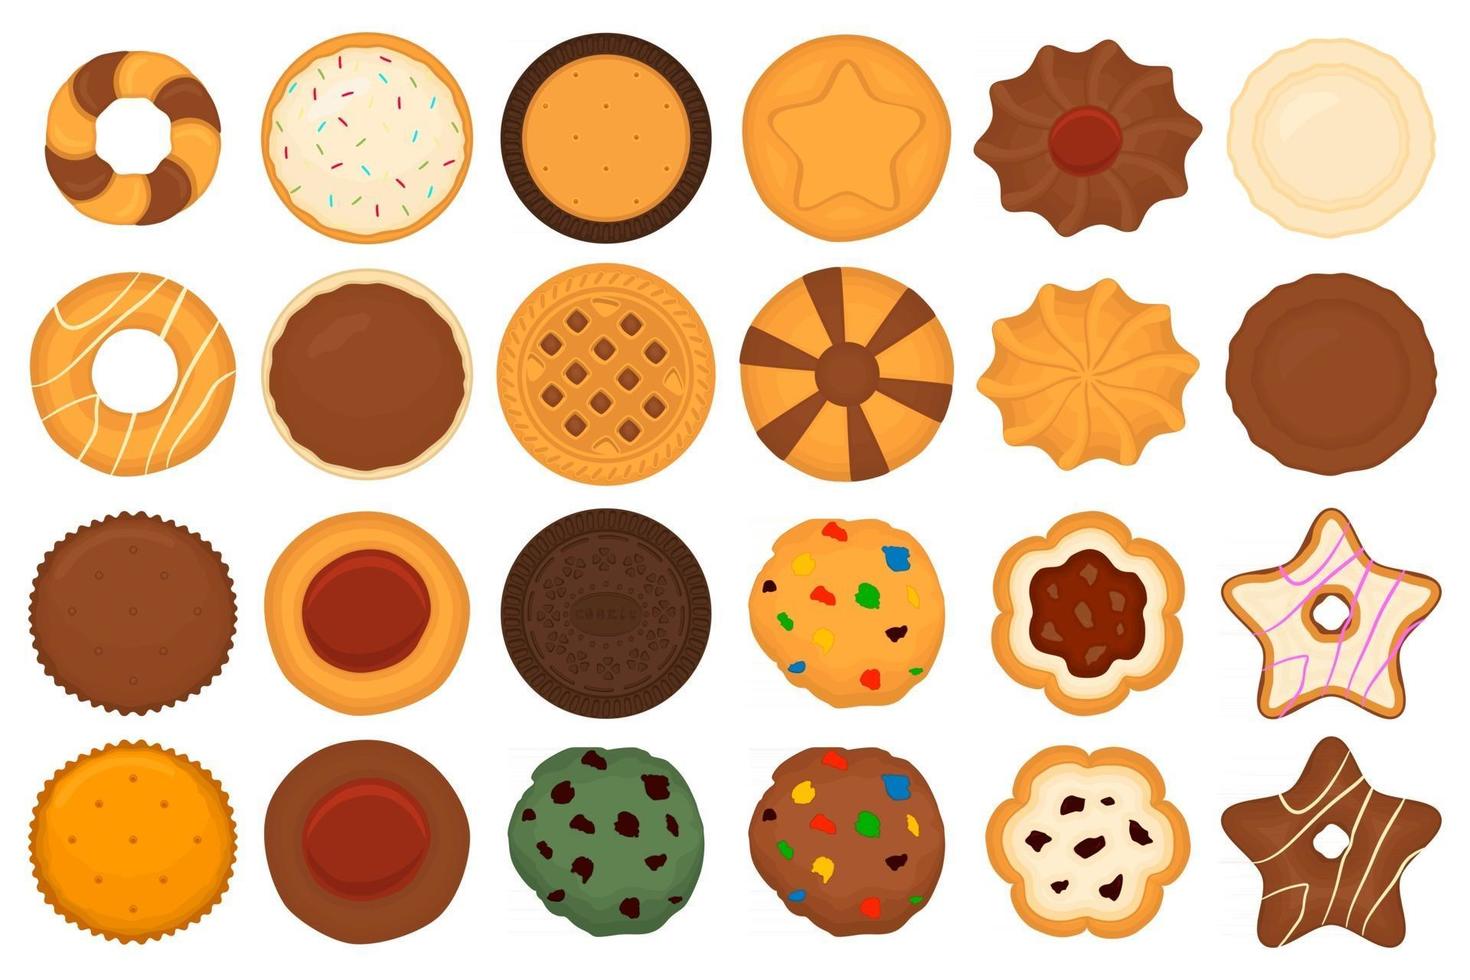 gran set de galletas diferentes, kit de galleta de pastelería colorida vector